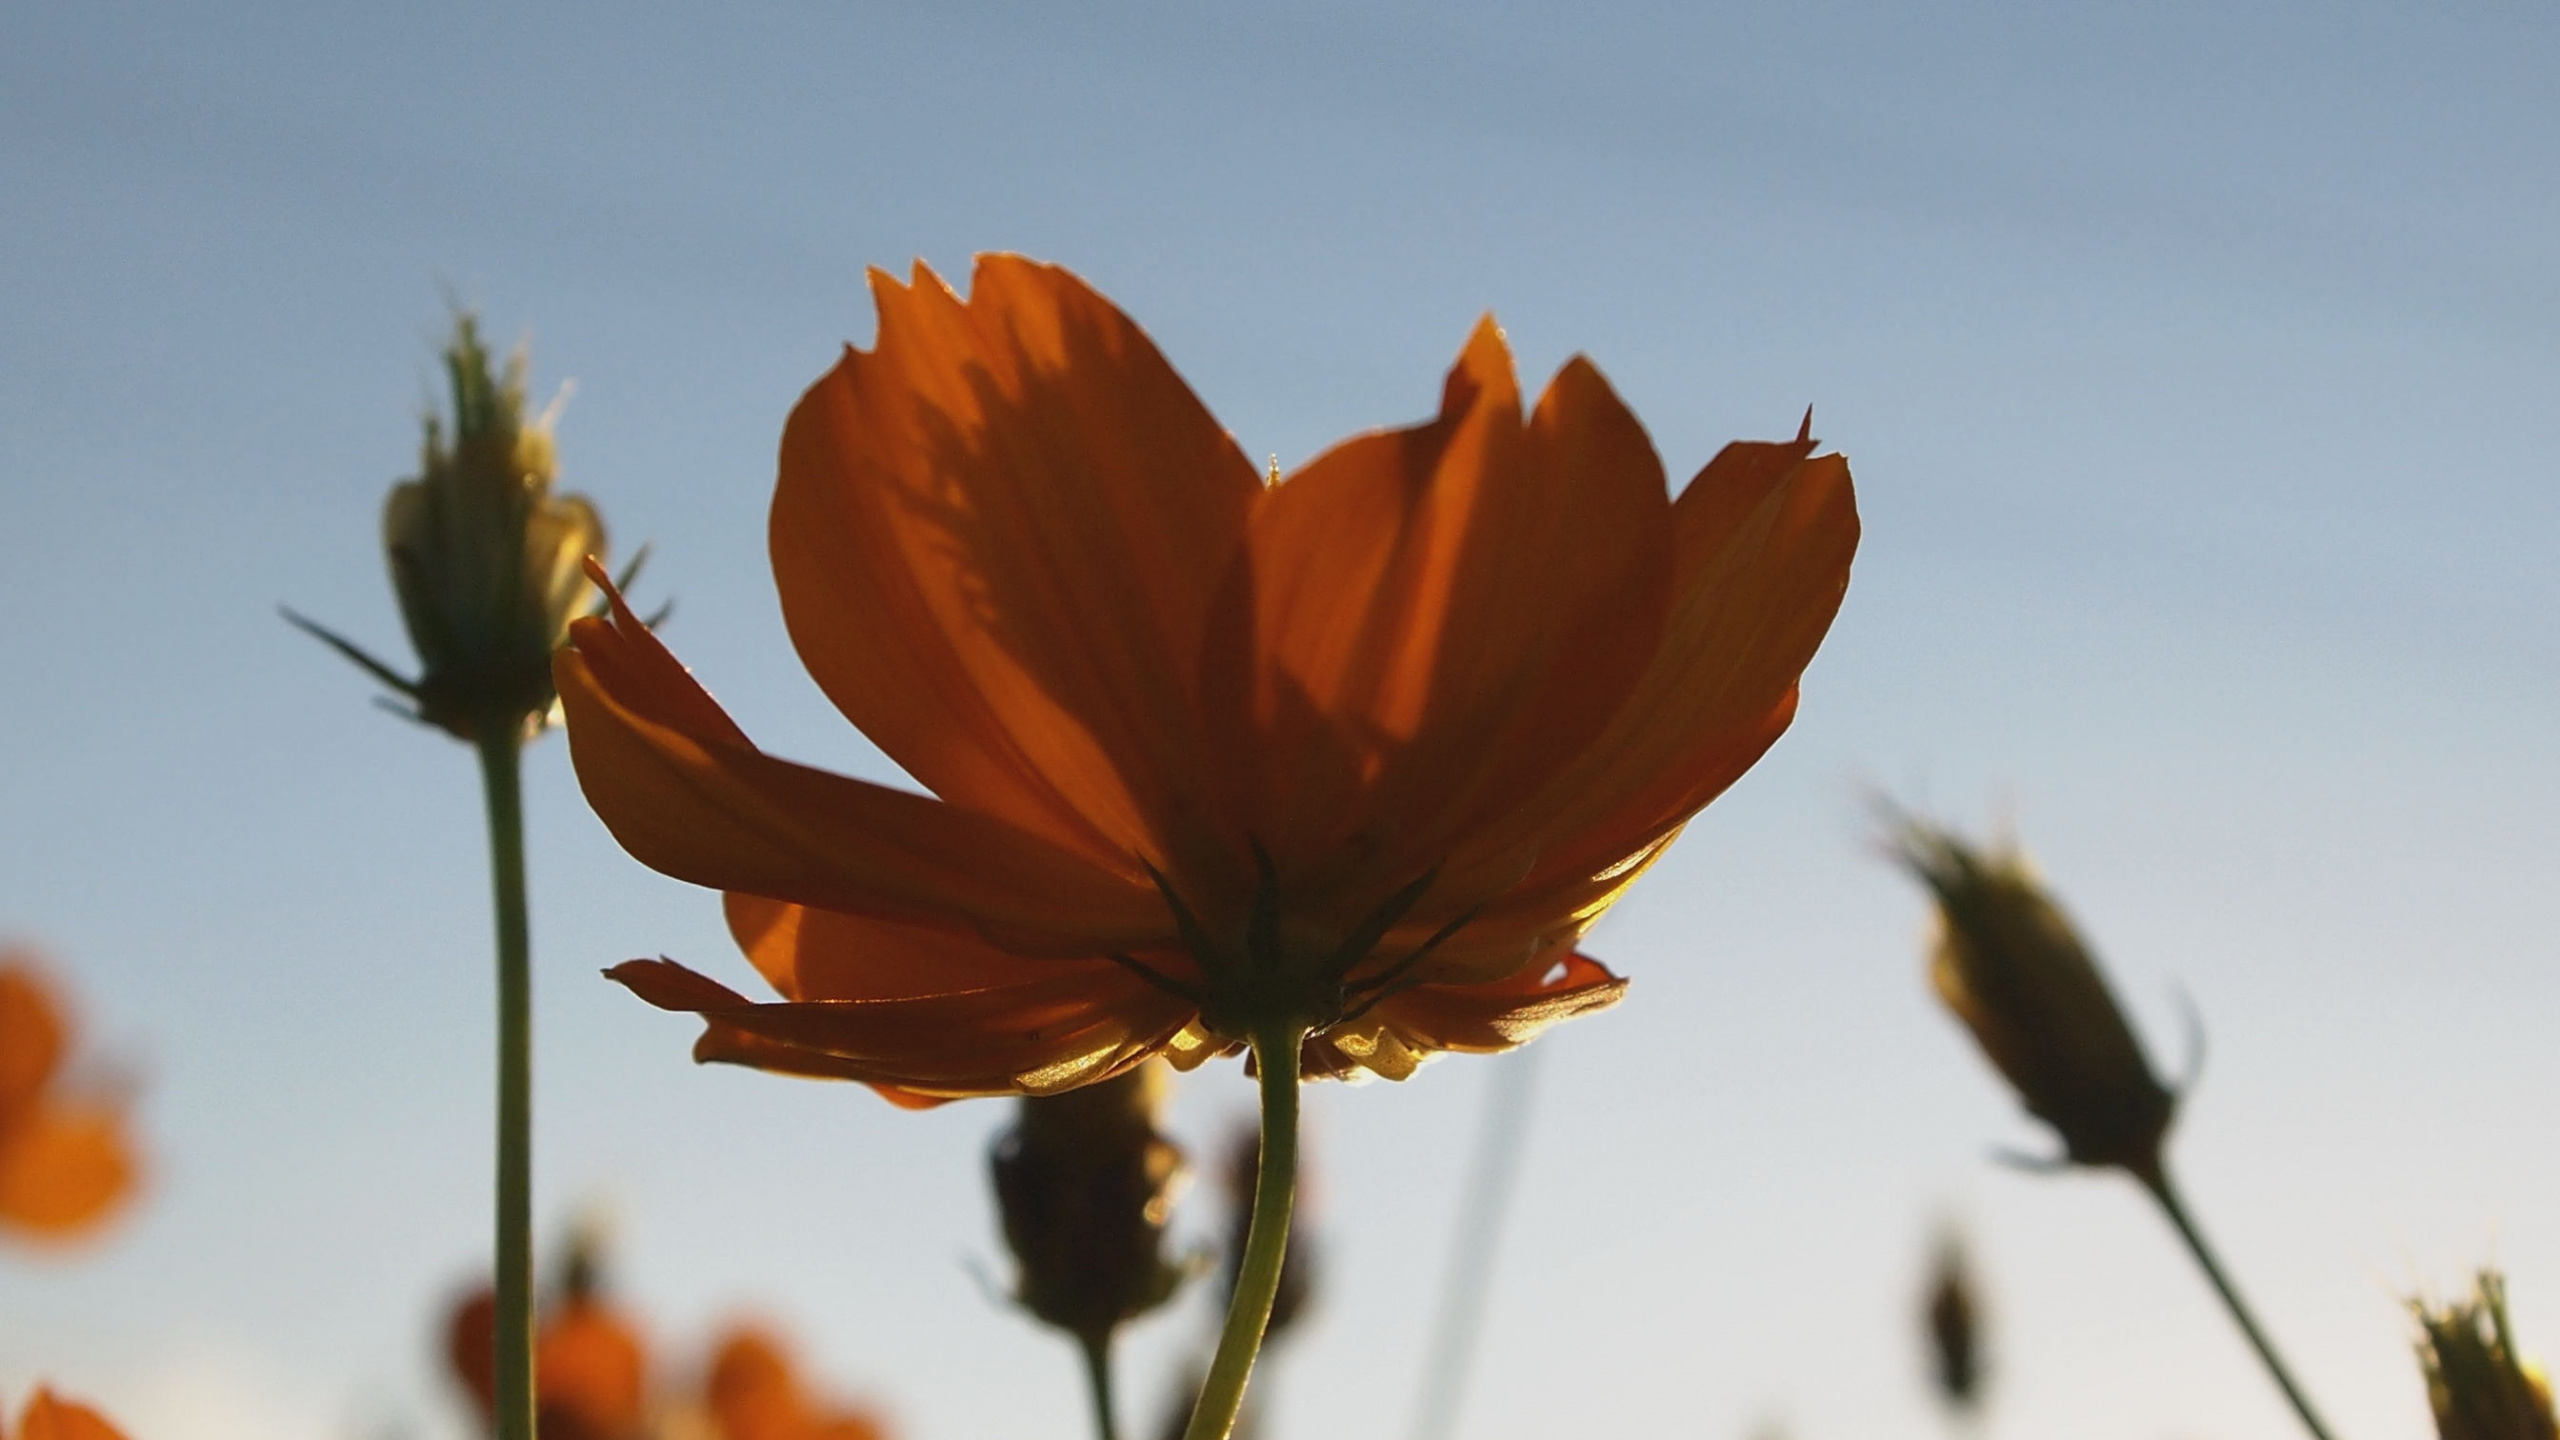 Orange Flower in Tilt Shift Lens. Wallpaper in 2560x1440 Resolution